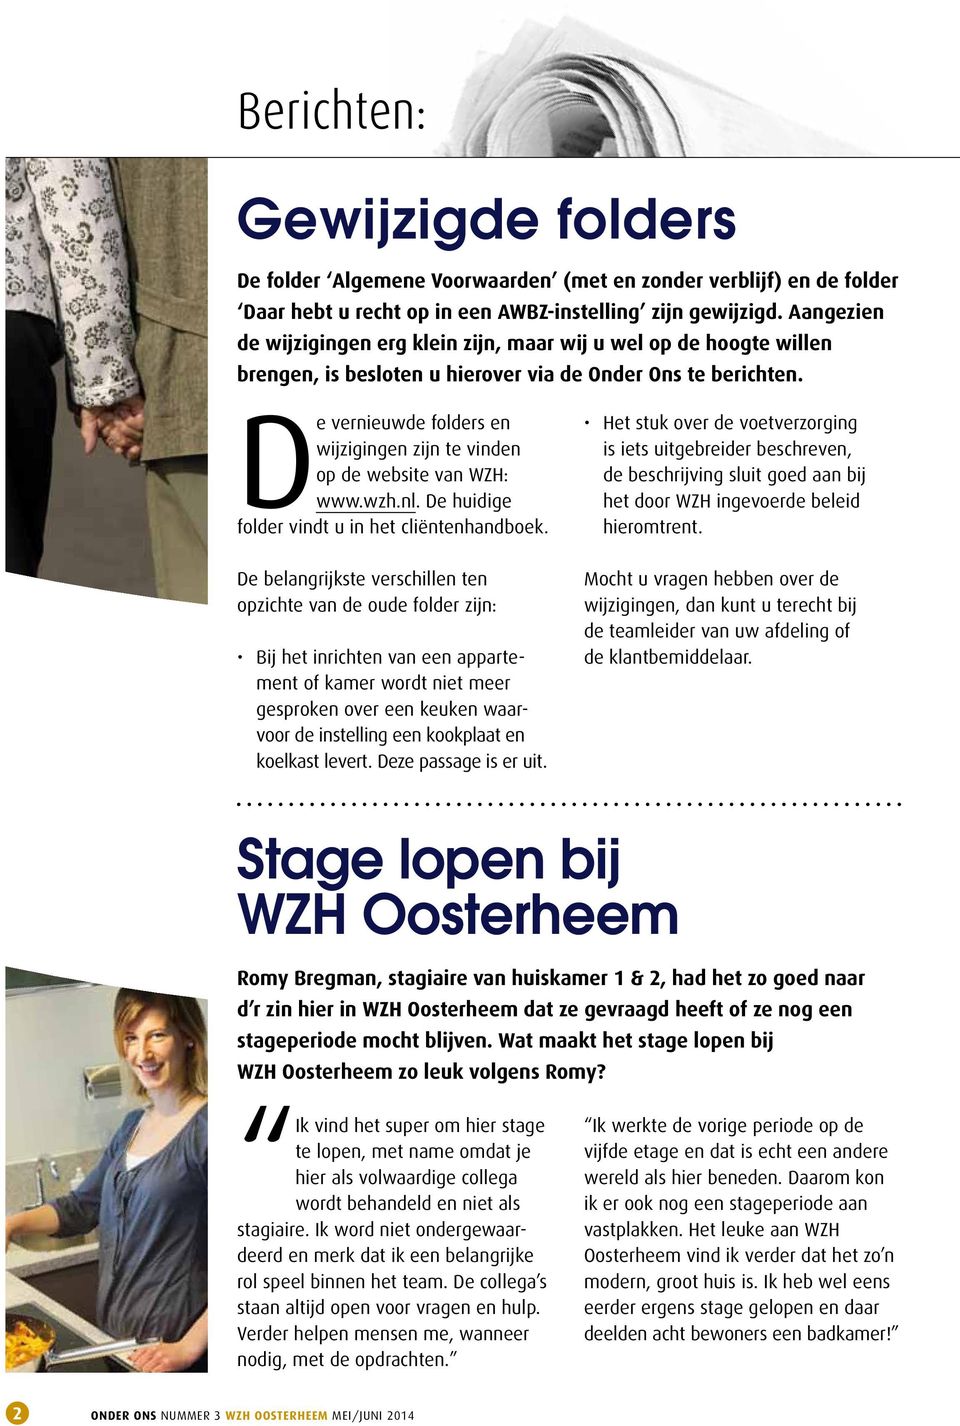 De vernieuwde folders en wijzigingen zijn te vinden op de website van WZH: www.wzh.nl. De huidige folder vindt u in het cliëntenhandboek.